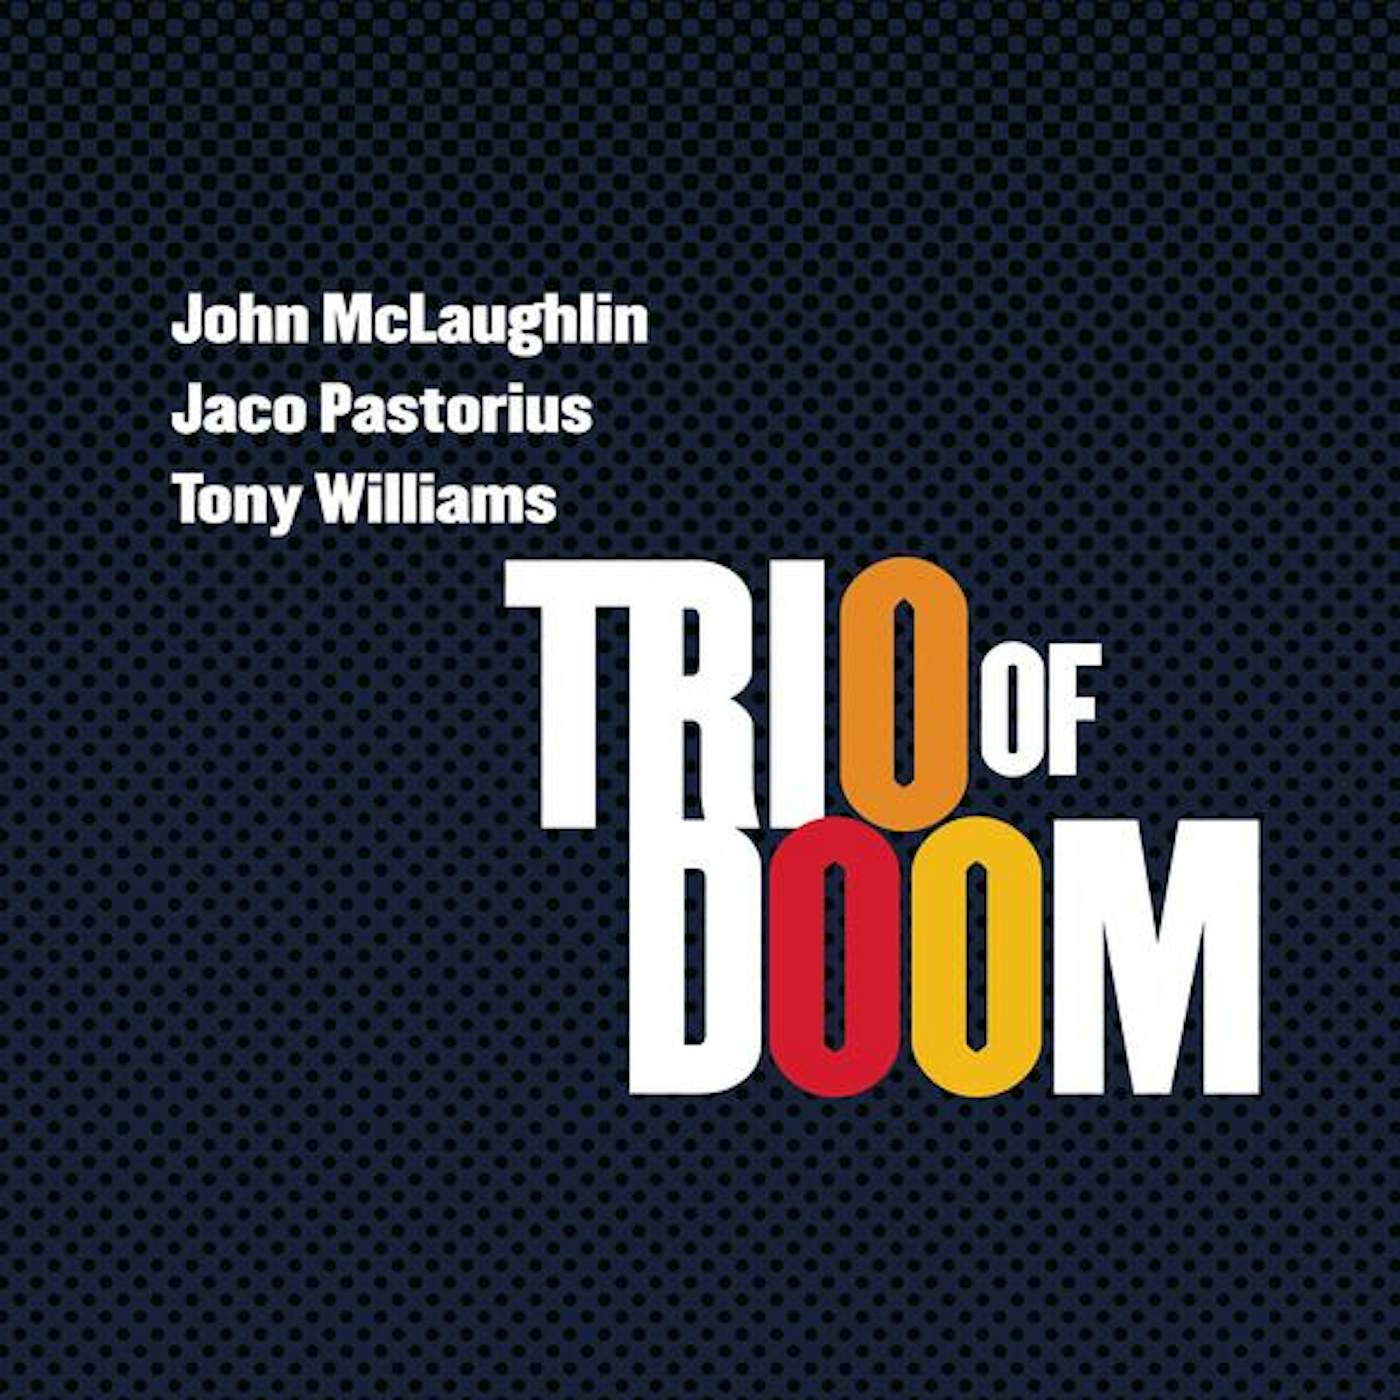 John McLaughlin TRIO OF DOOM CD